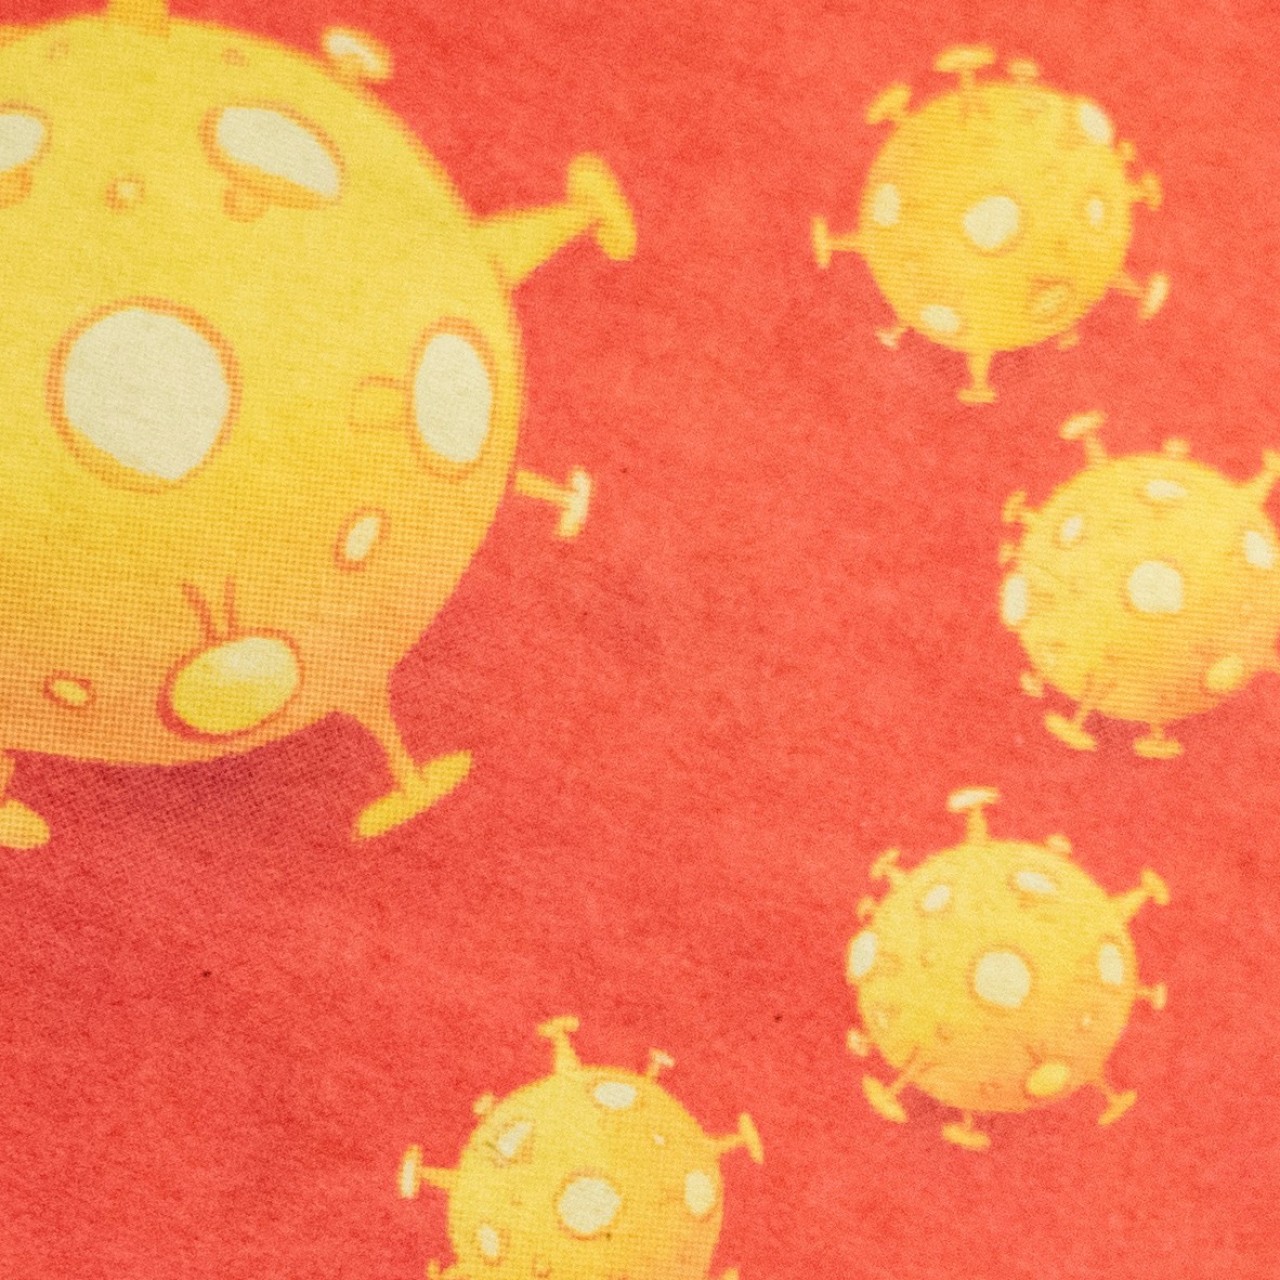 China Angered By Coronavirus Cartoon In Danish Newspaper South